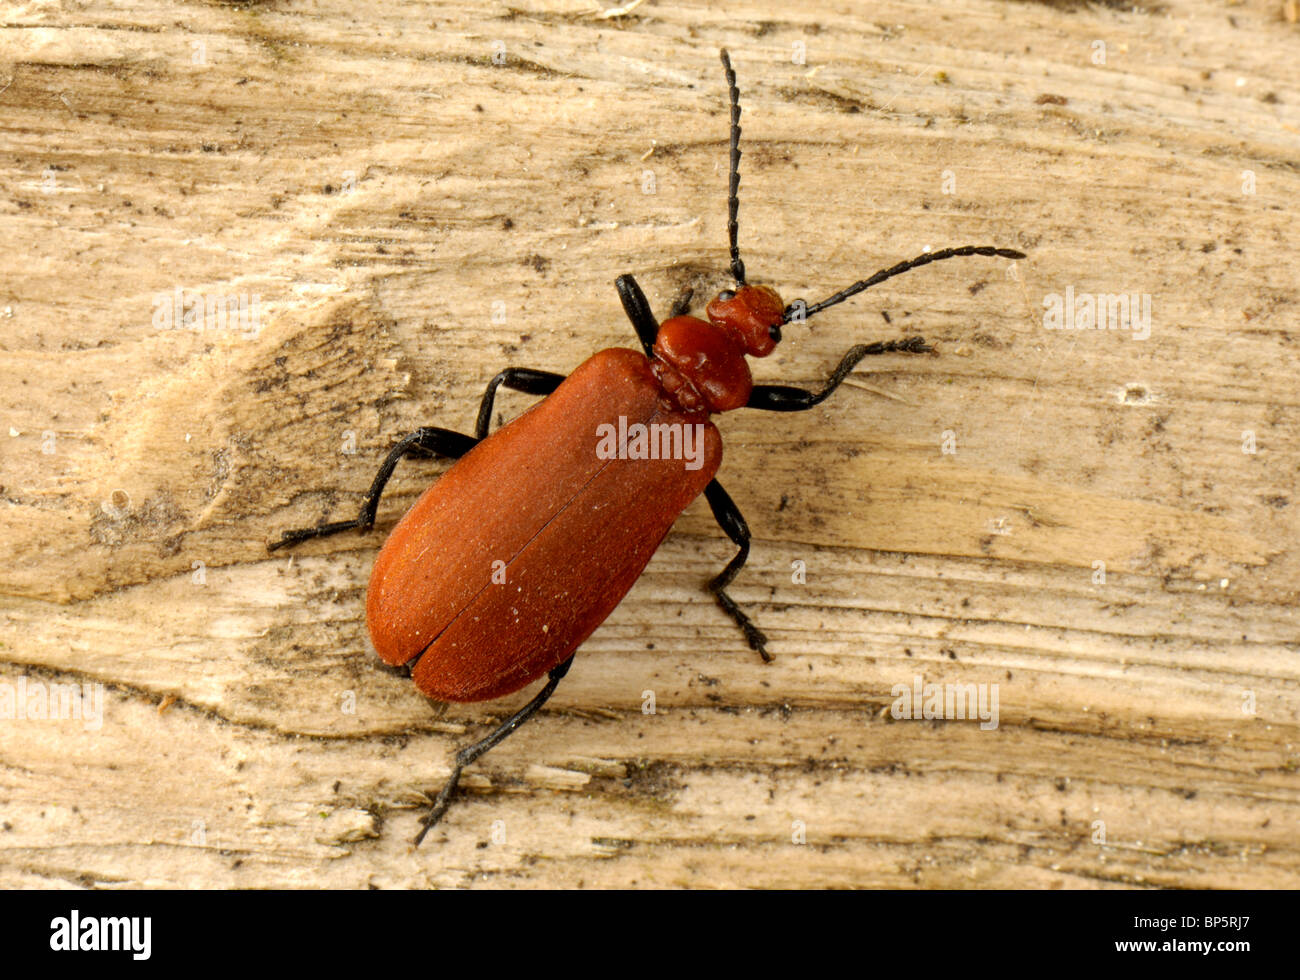 A cardinal beetle (Pyrochroa coccinea) on wood Stock Photo - Alamy